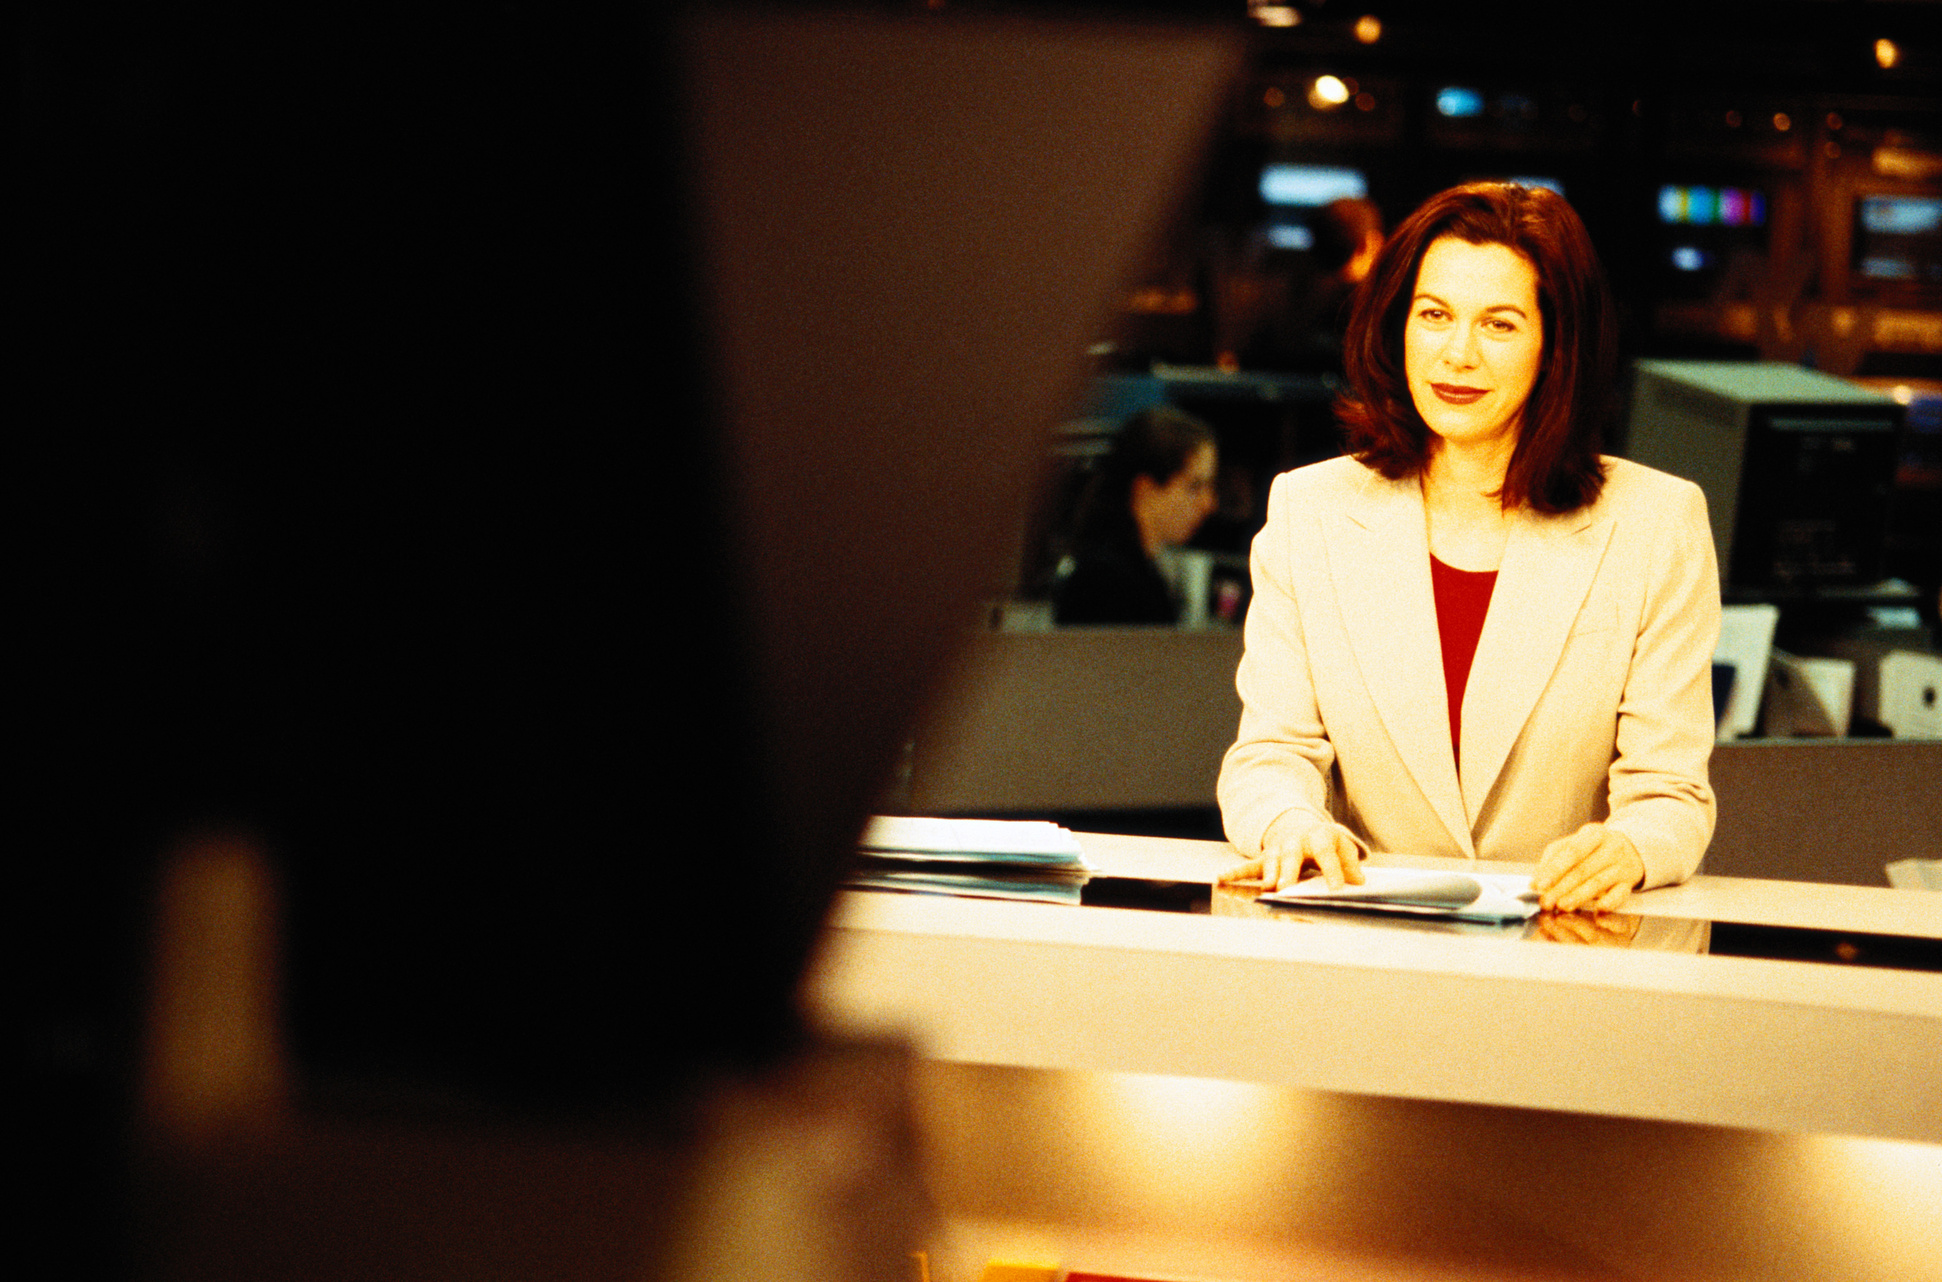 Television anchorwoman sitting at desk smiling at camera